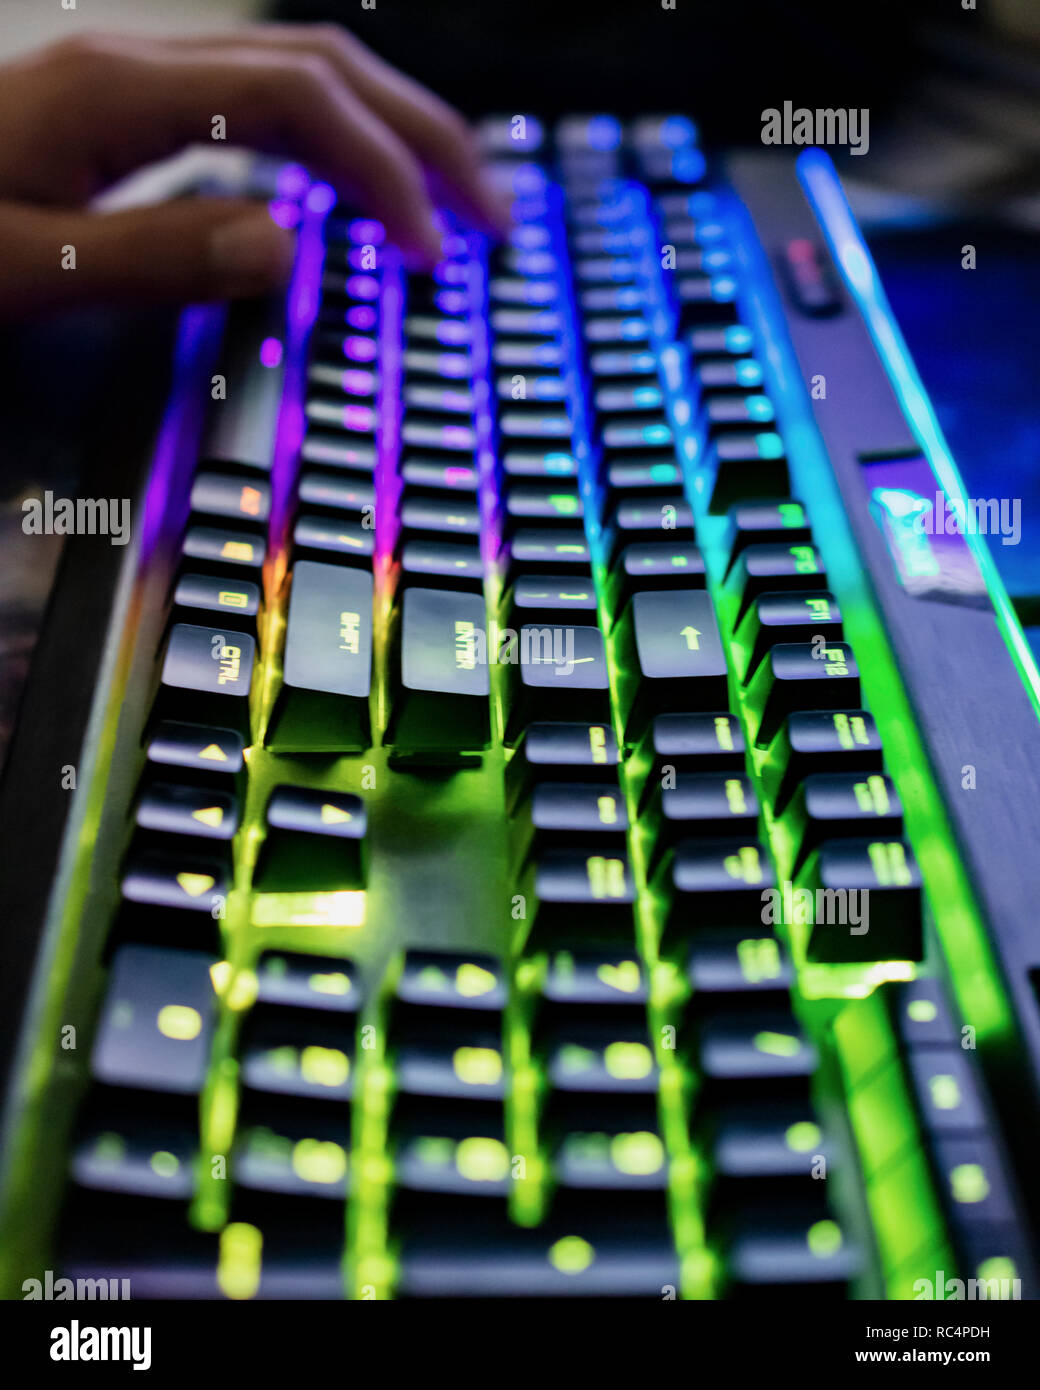 Bunte Gaming Pc Tastatur Hand Unscharf Im Hintergrund Stockfotografie Alamy